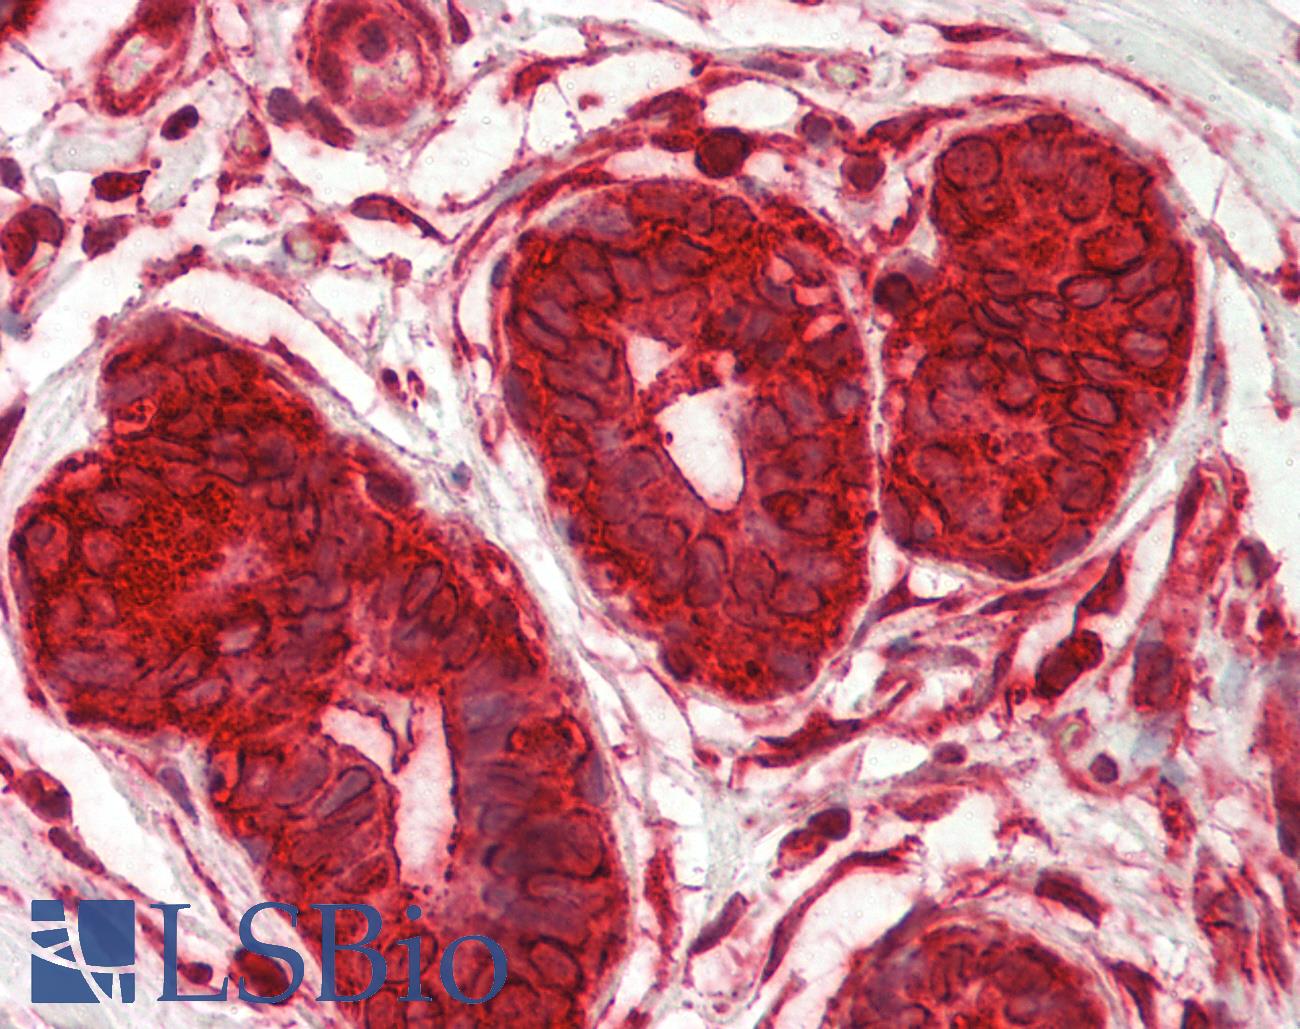 DENR / Density Regulated Antibody - Human Breast: Formalin-Fixed, Paraffin-Embedded (FFPE)